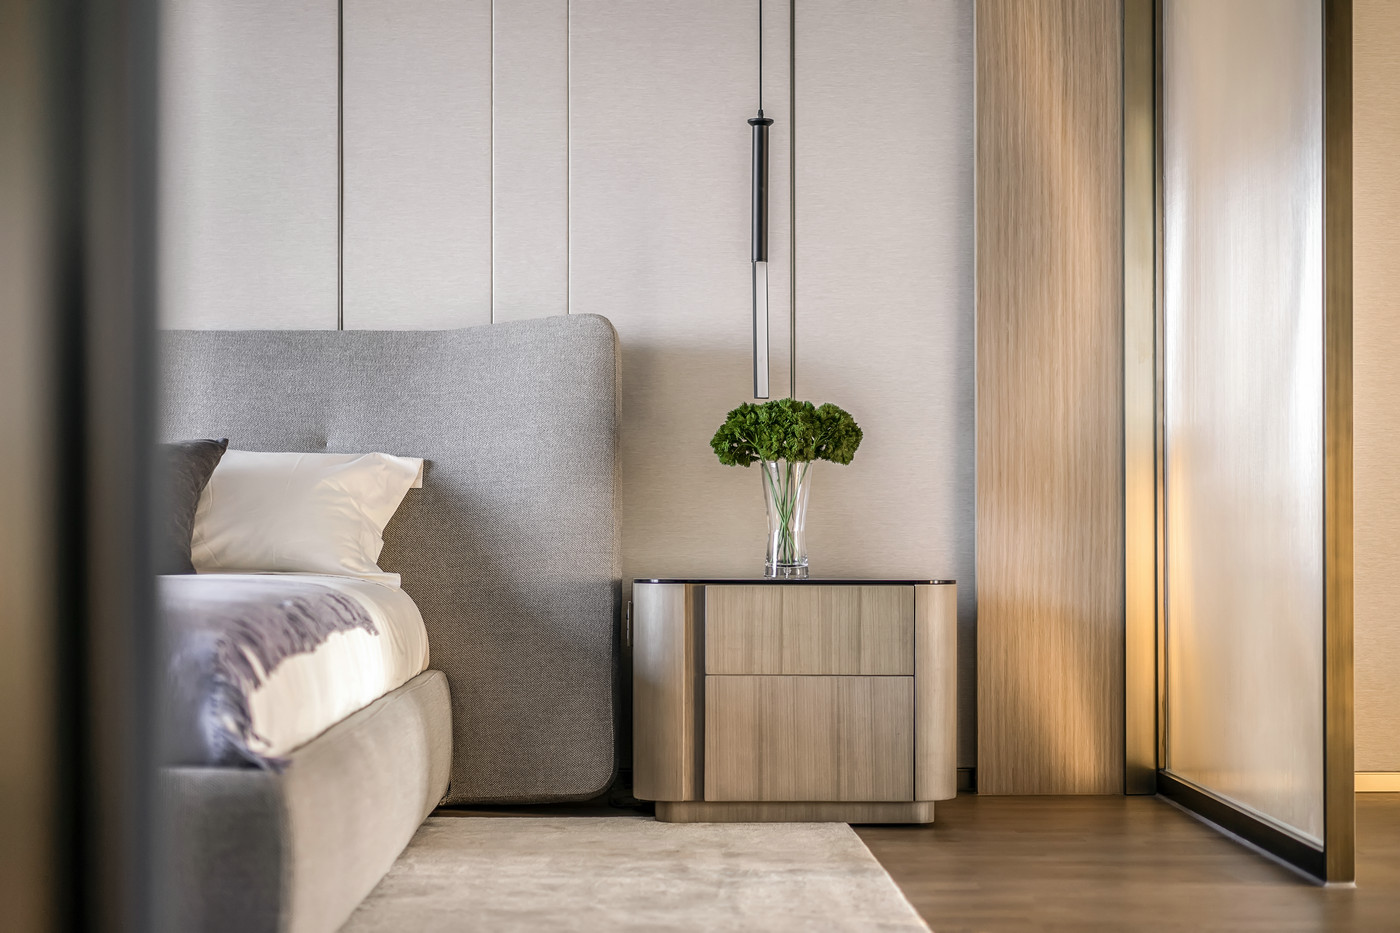 木色家具古朴优雅，布艺床头透露着温和雅致的空间氛围，在灯光映衬下干净整洁。